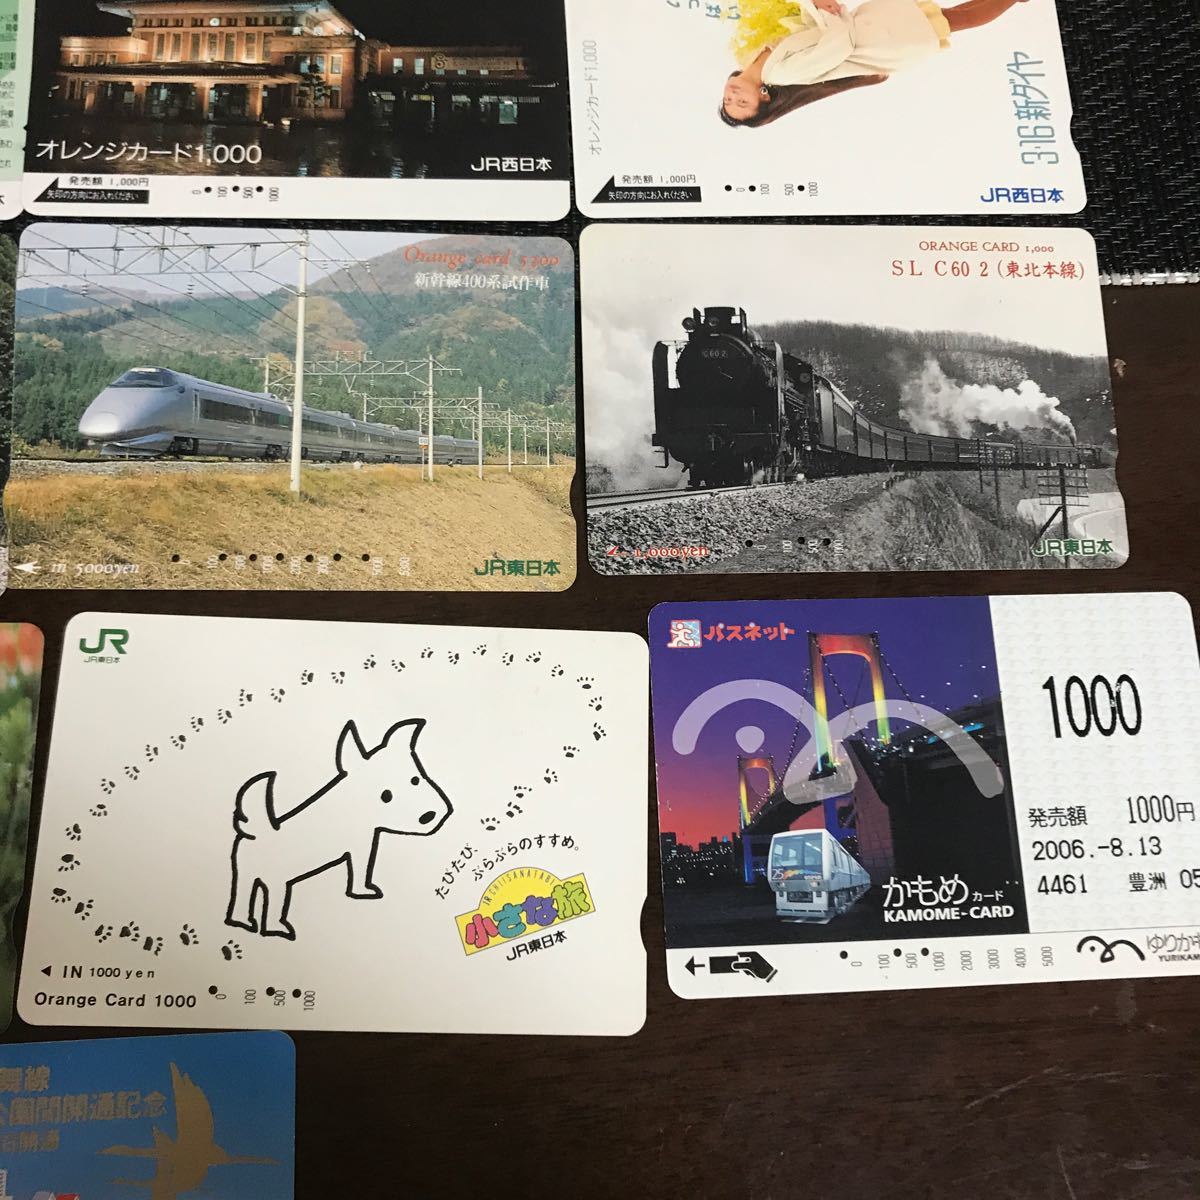  использованный / io-card / Orange Card / Pas сеть / Lilly карта / все 29 листов /JR Восточная Япония 